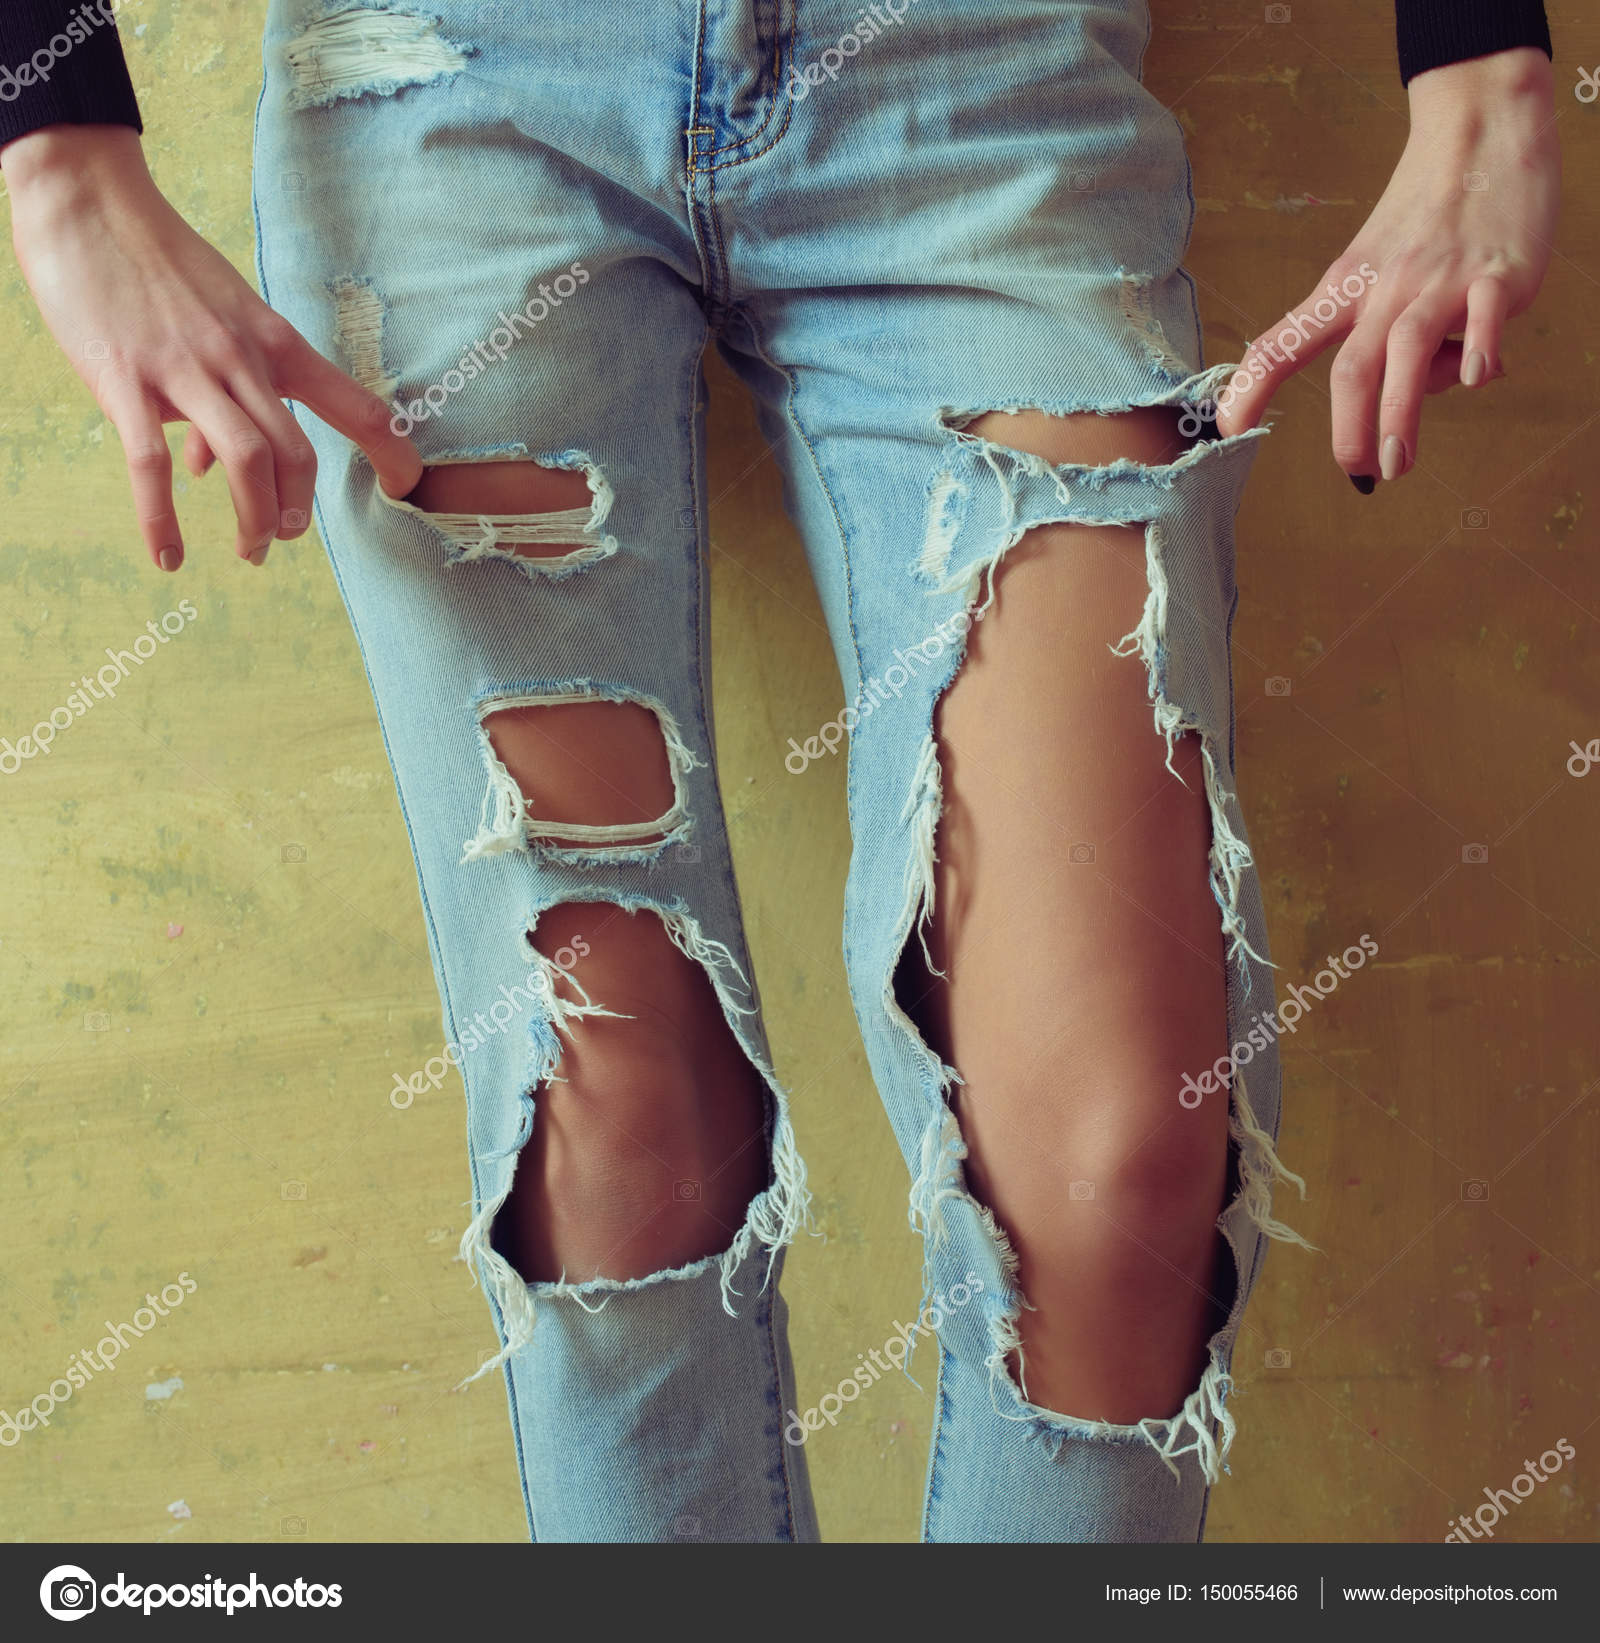 Брюнетка в рваных джинсах согласилась показать очко